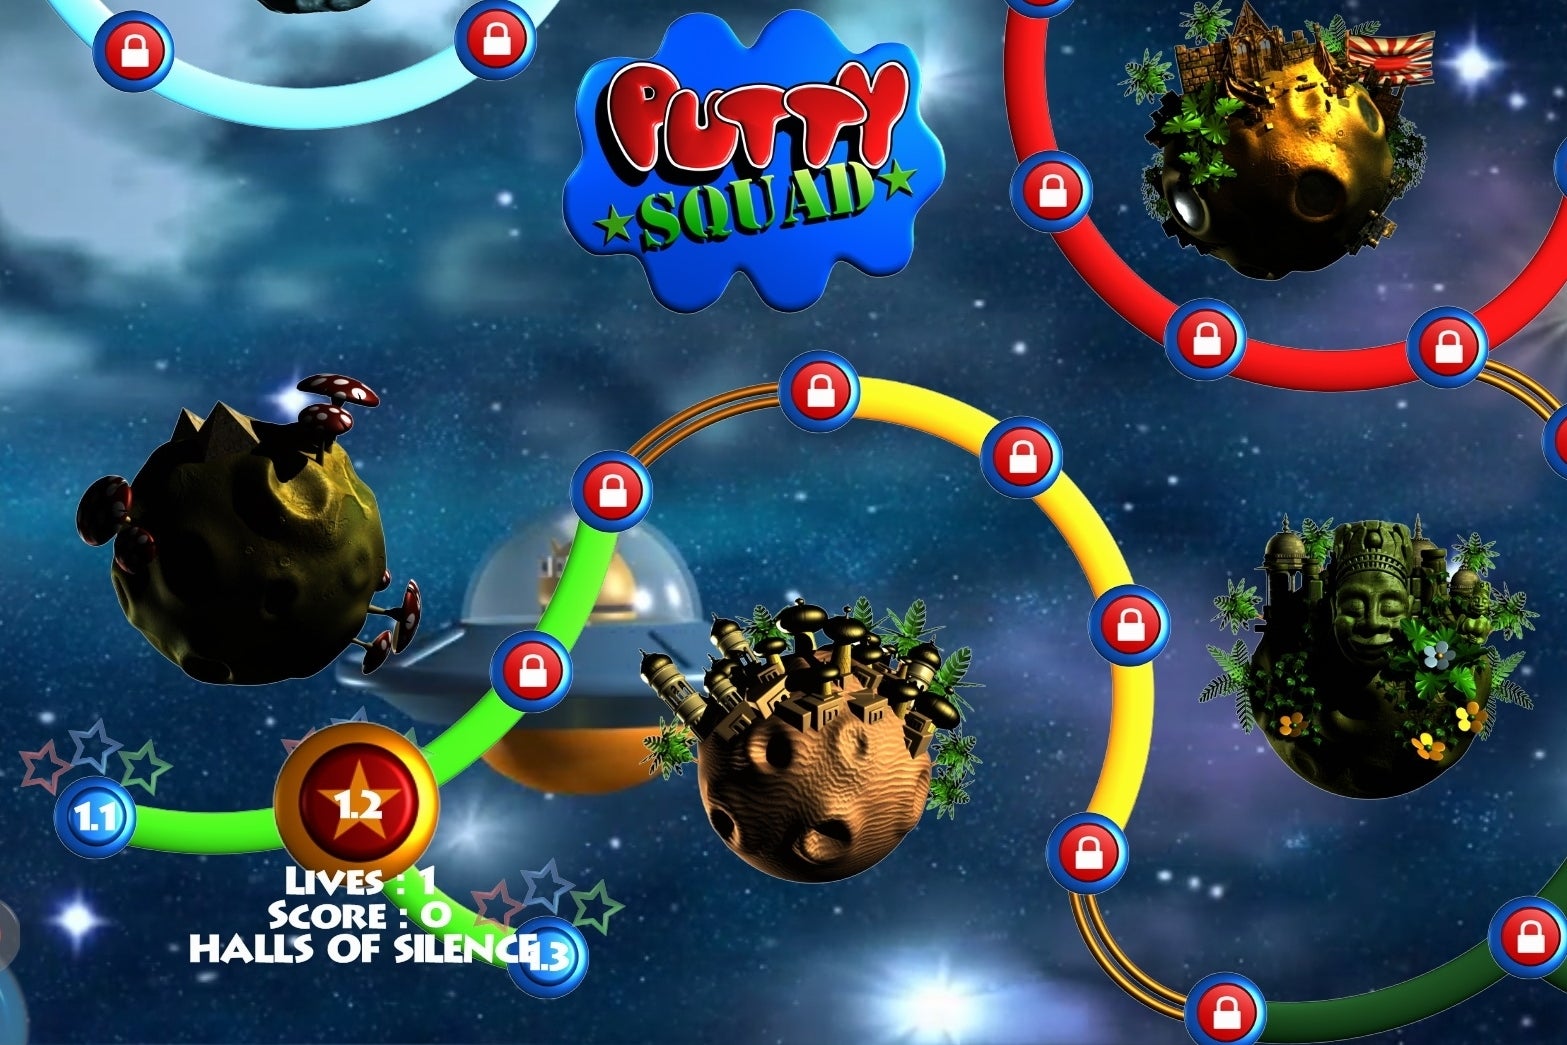 Obrazki dla Putty Squad i The Pinball Arcade tytułami startowymi na PlayStation 4